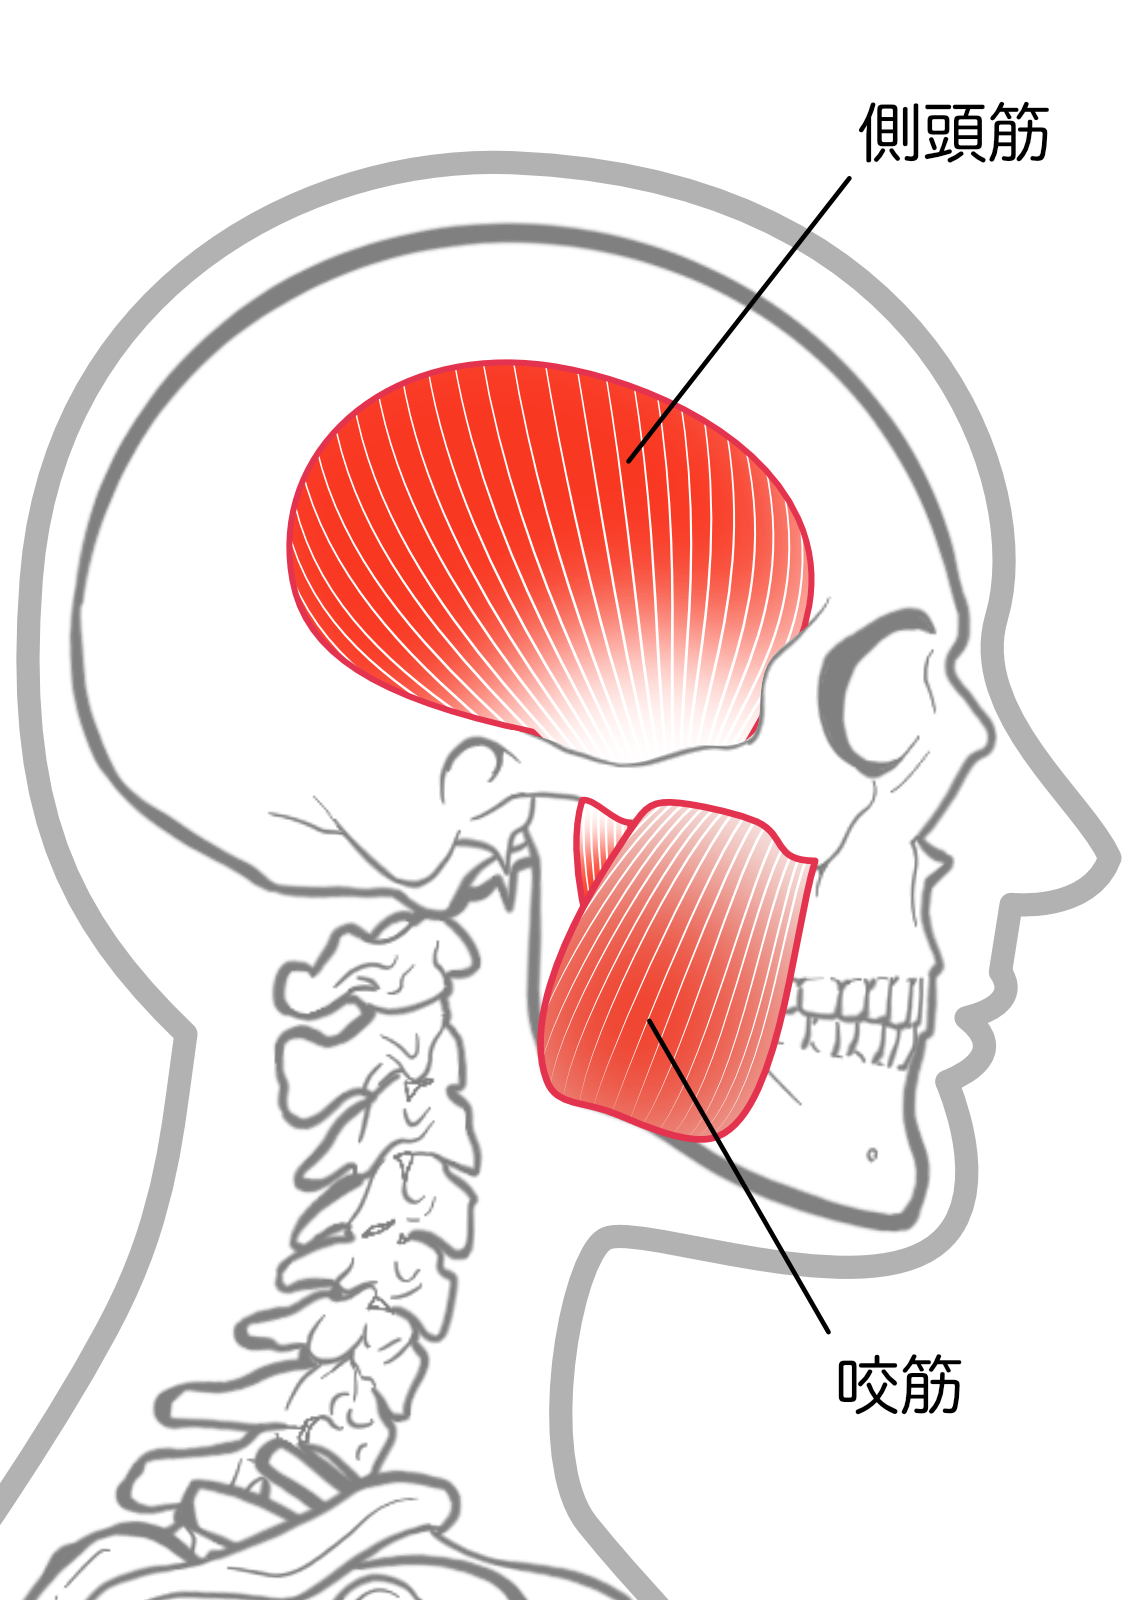 側頭筋、咬筋の位置と筋肉の走行